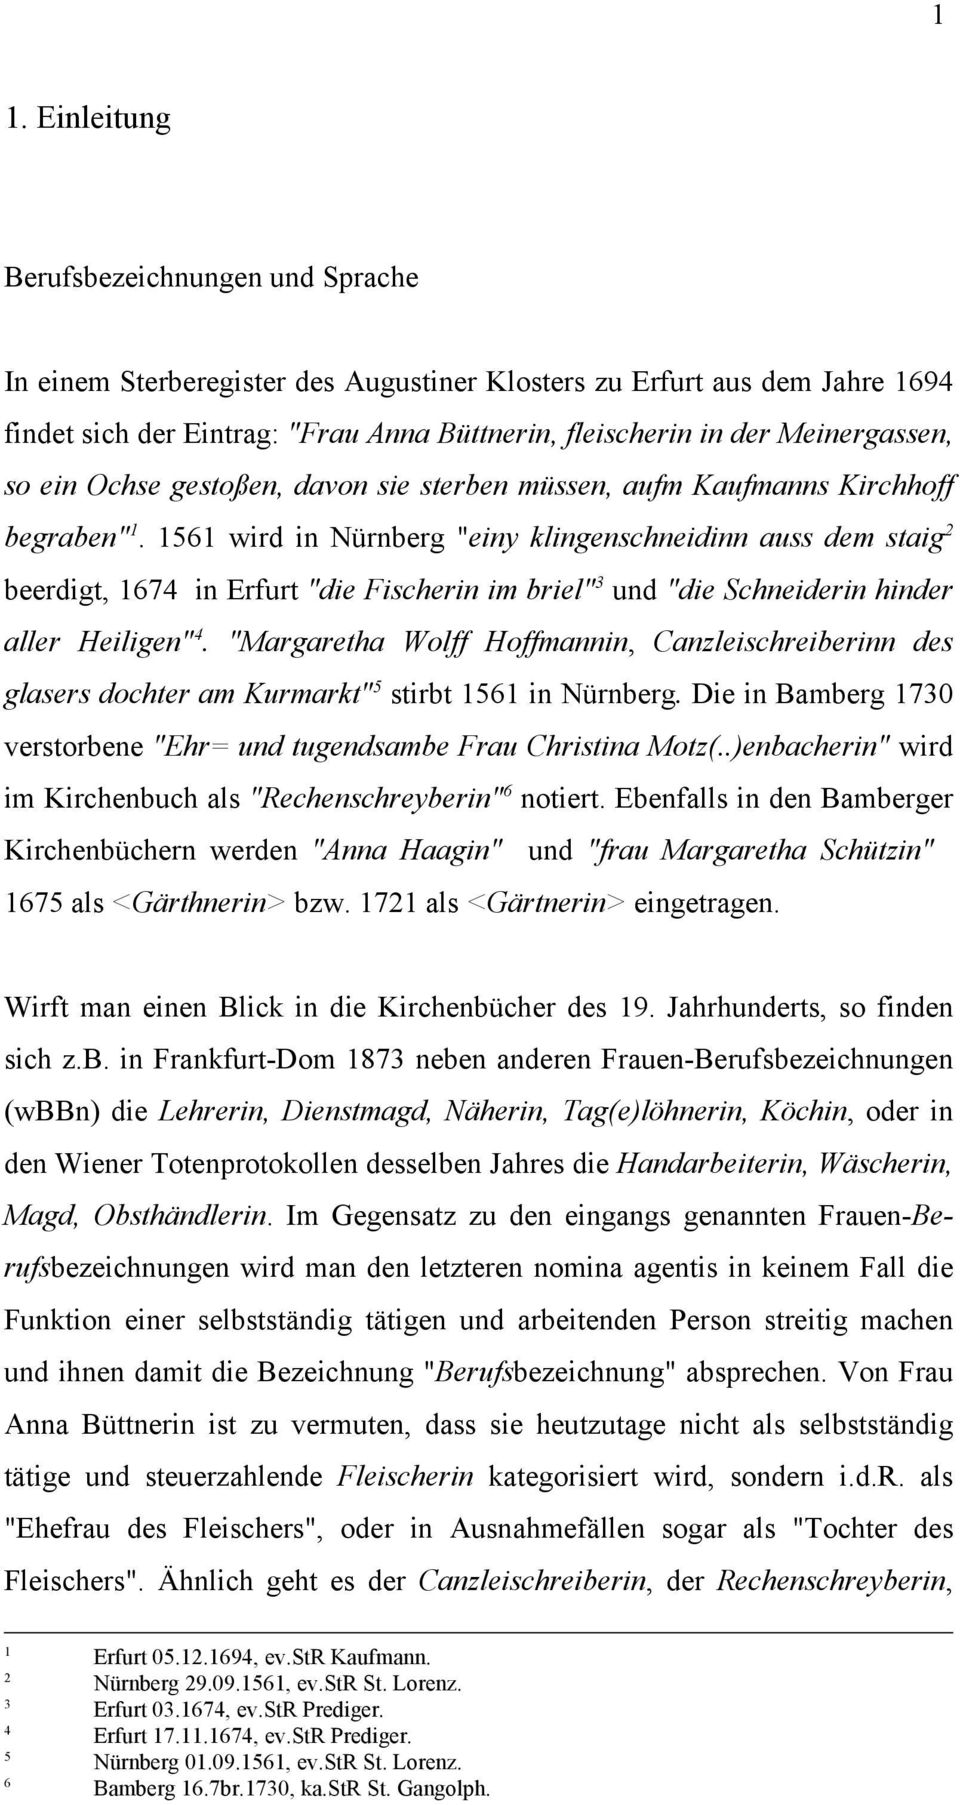 56 wird in Nürnberg "einy klingenschneidinn auss dem aig beerdigt, 674 in Erfurt "die Fischerin im briel" 3 und "die Schneiderin hinder aller Heiligen" 4.